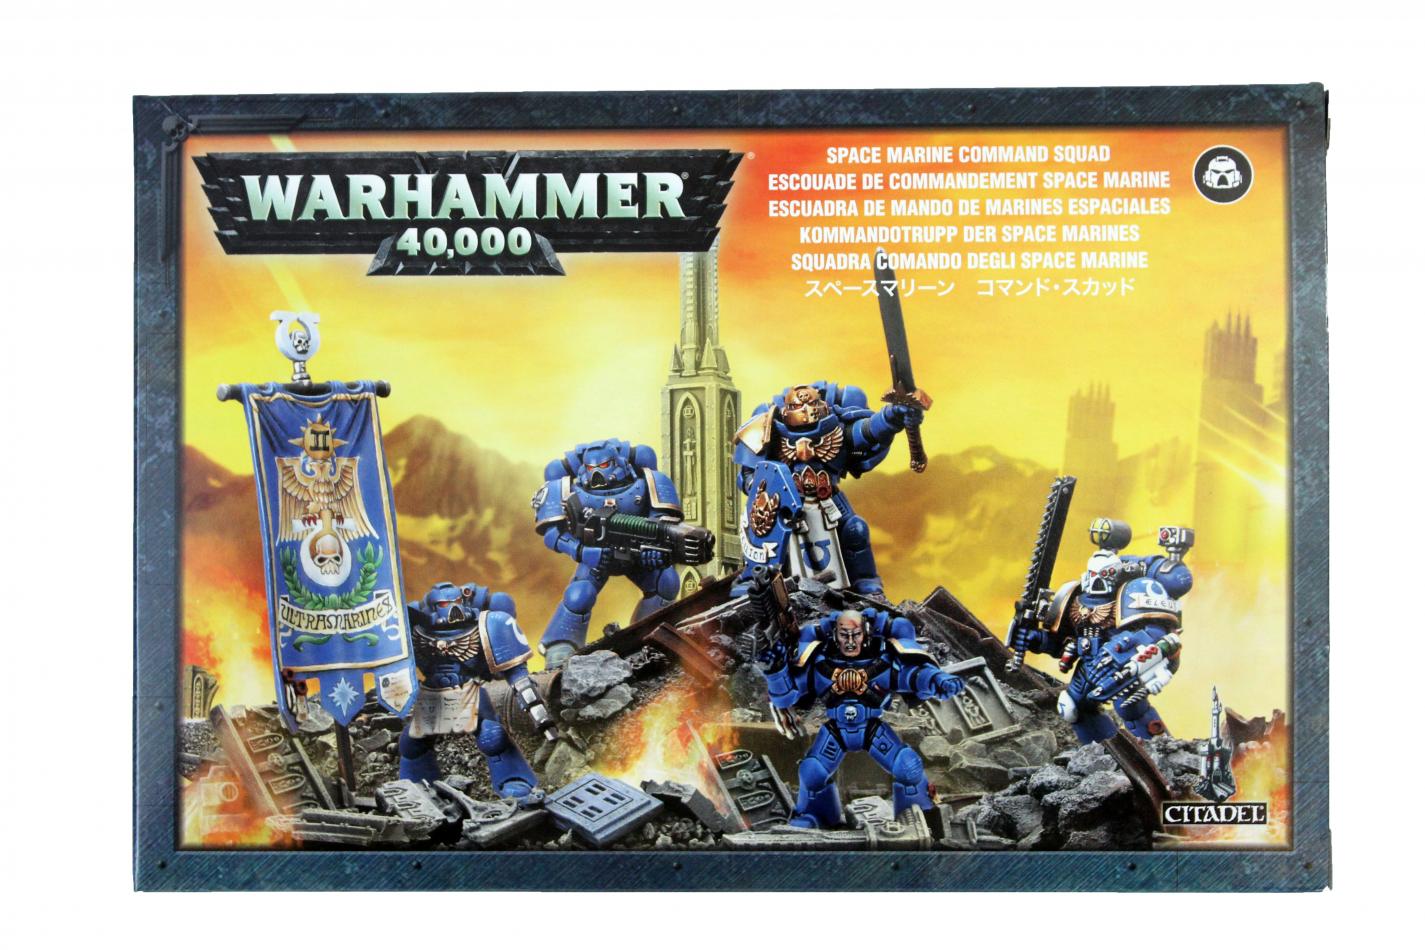 Space marine 2 купить. Warhammer 40000 Space Marine Command Squad. Space Marine Command Squad. Warhammer 40000 Squad Command. Warhammer 40000 Space Marine Command Squad битсы.